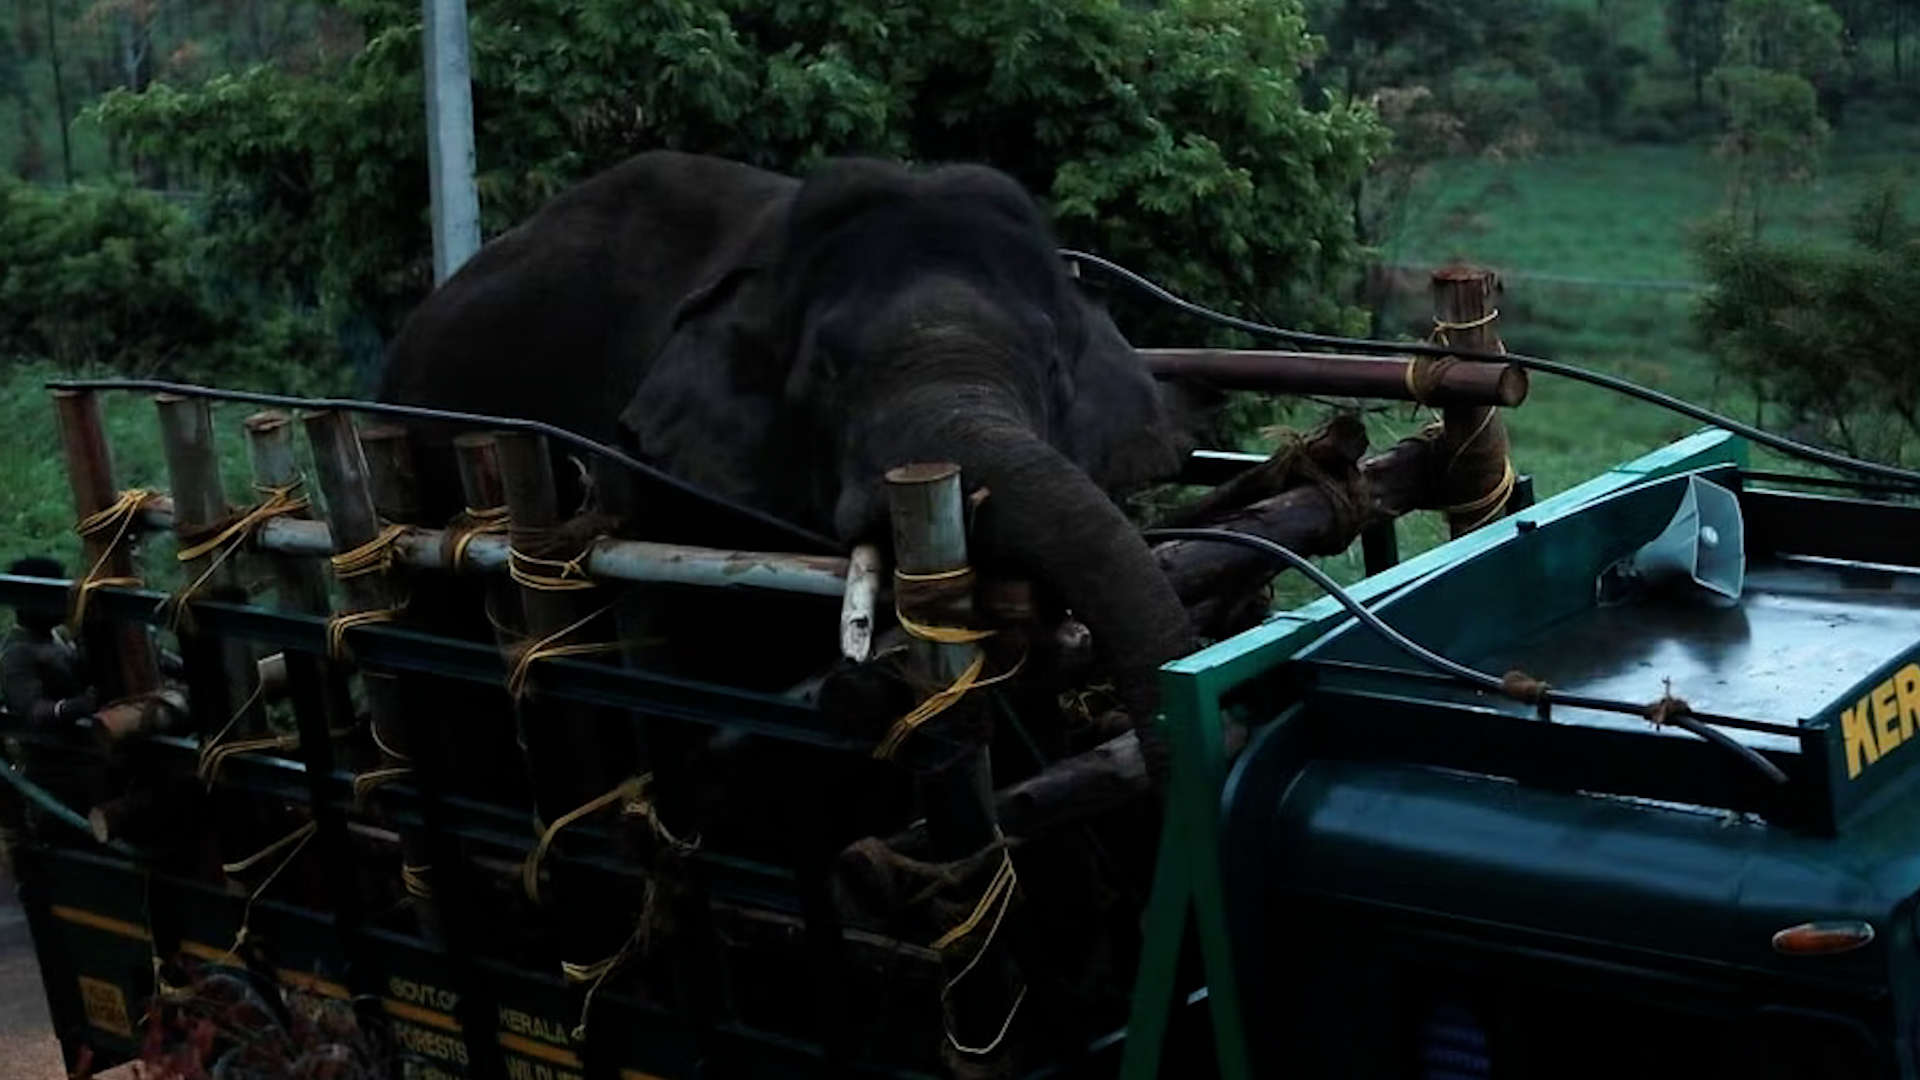 Ấn Độ bắt con voi khét tiếng ‘cuồng gạo’ đã giết chết 6 người - Ảnh 1.